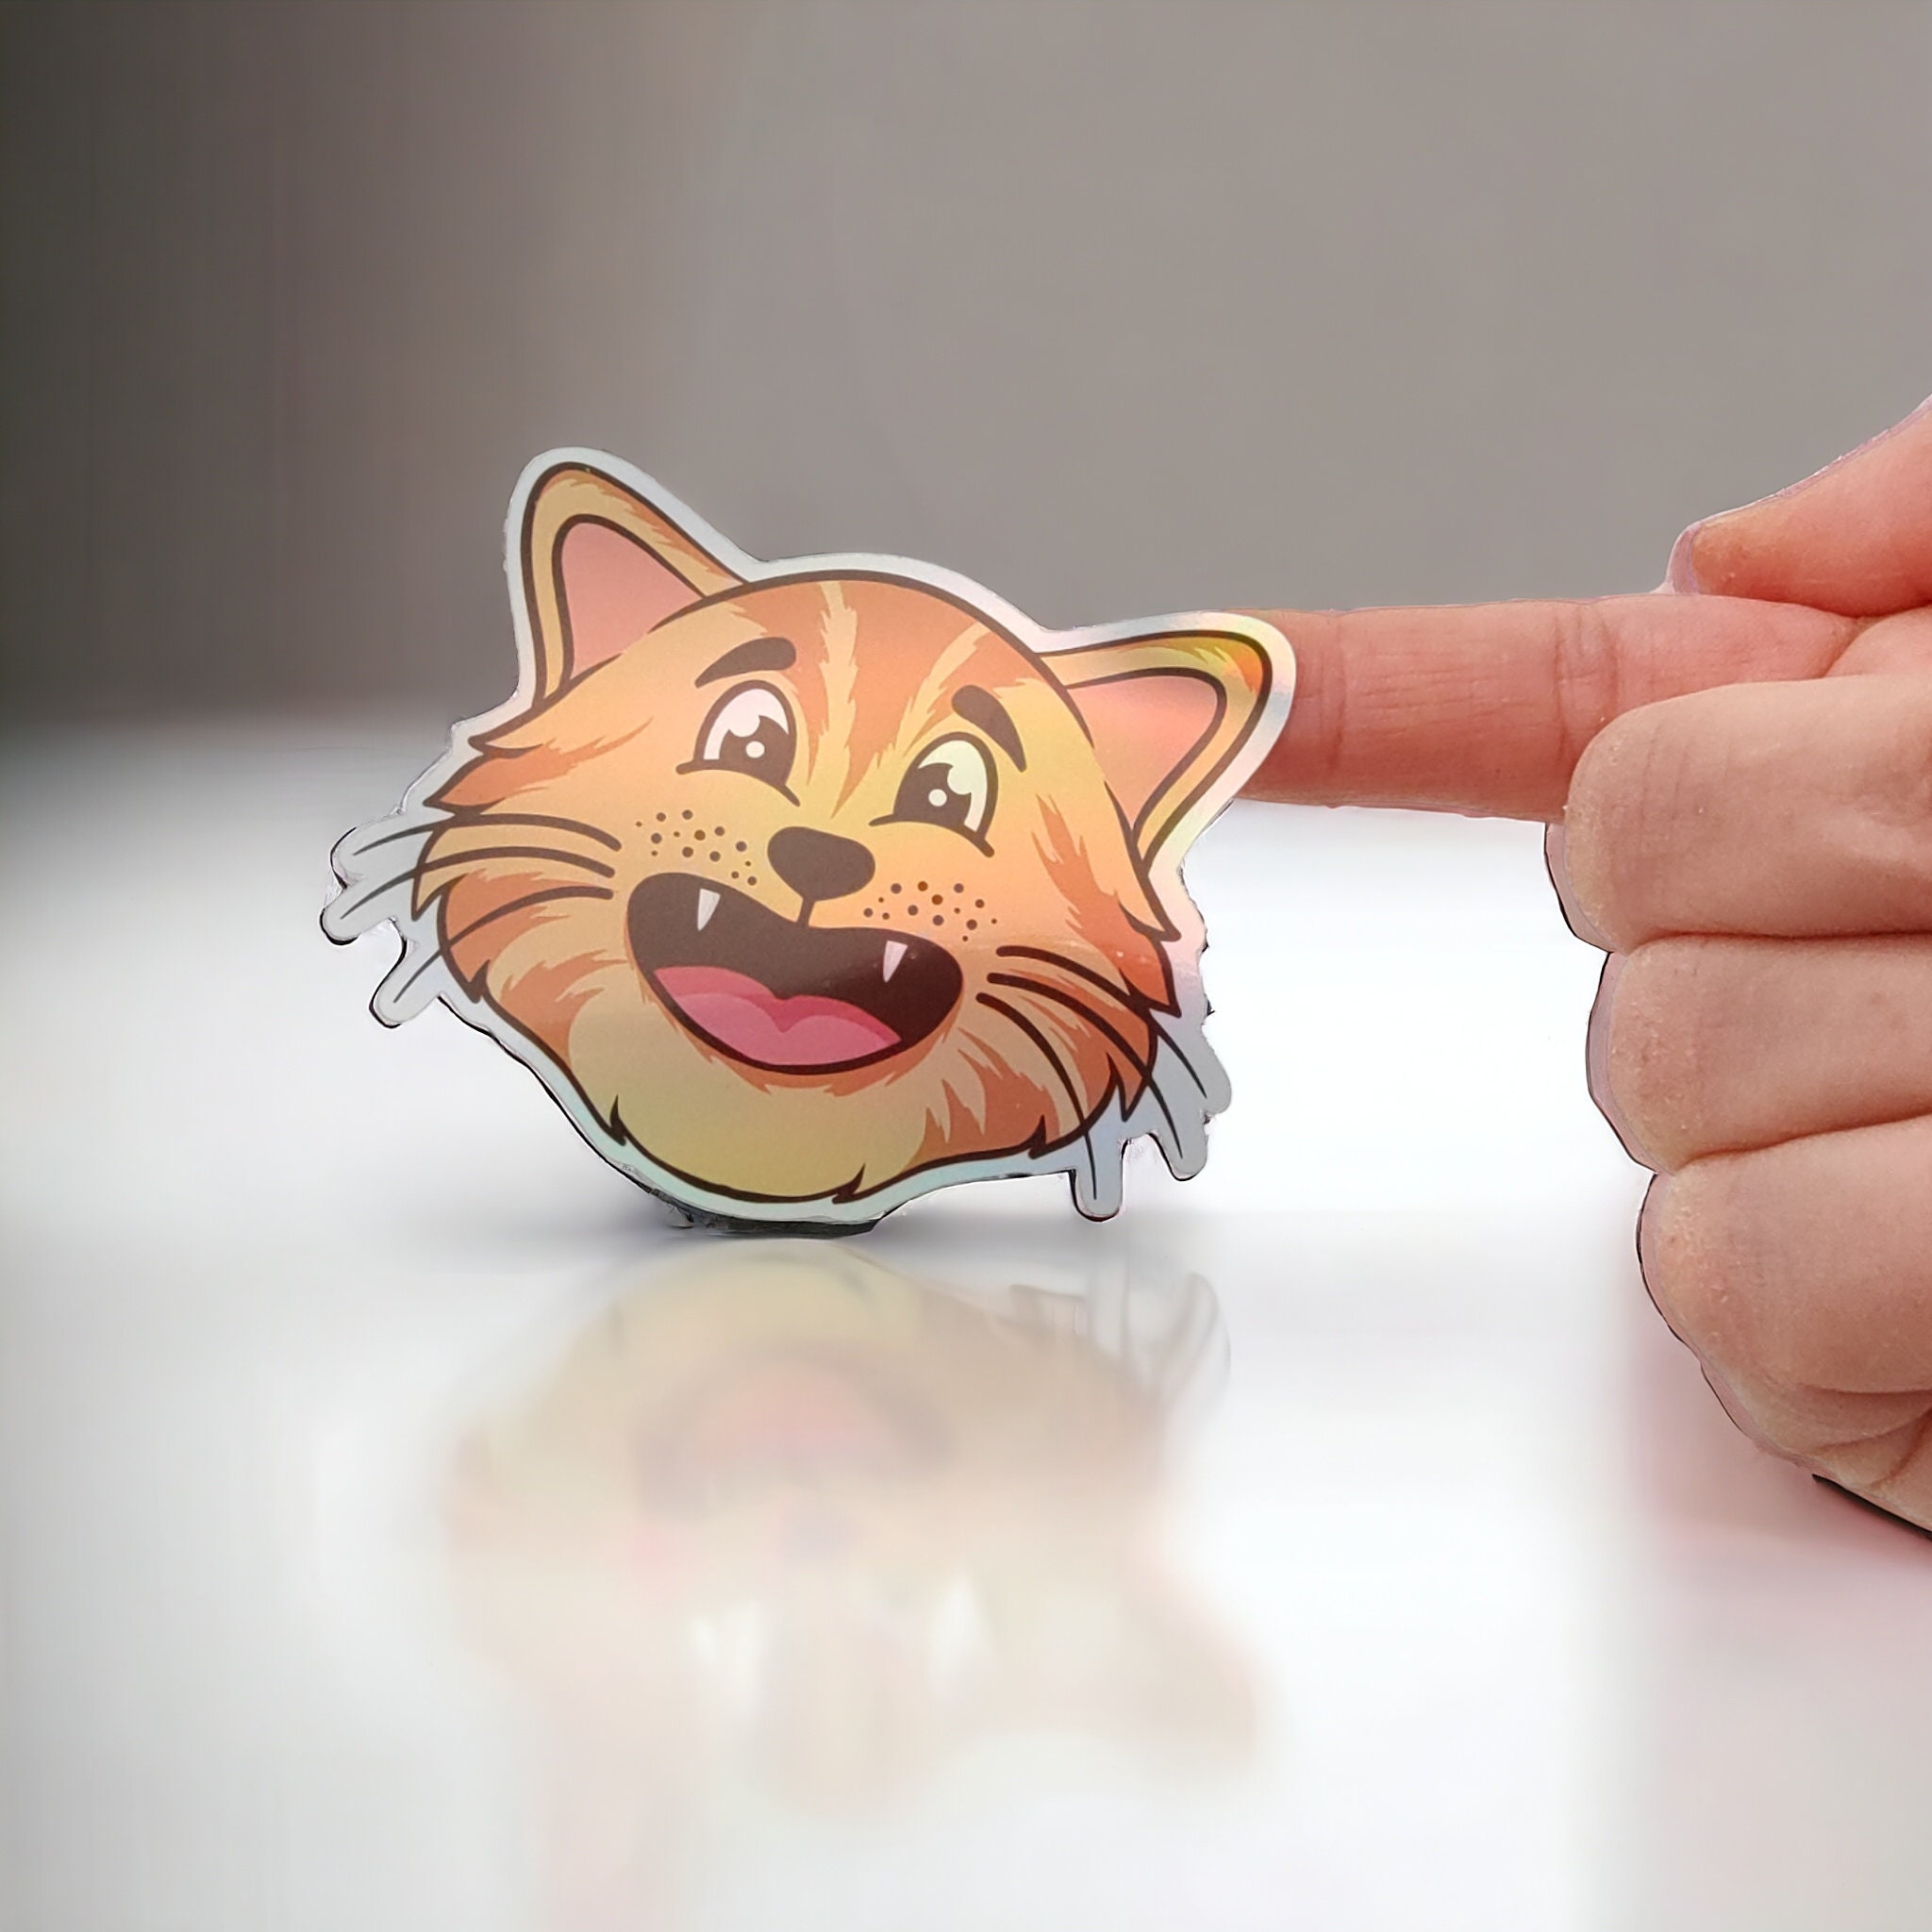 Holographischer Sticker "Katzen" | Sticker Set - Aufkleber 10 Sticker zur Auswahl I wasserfest